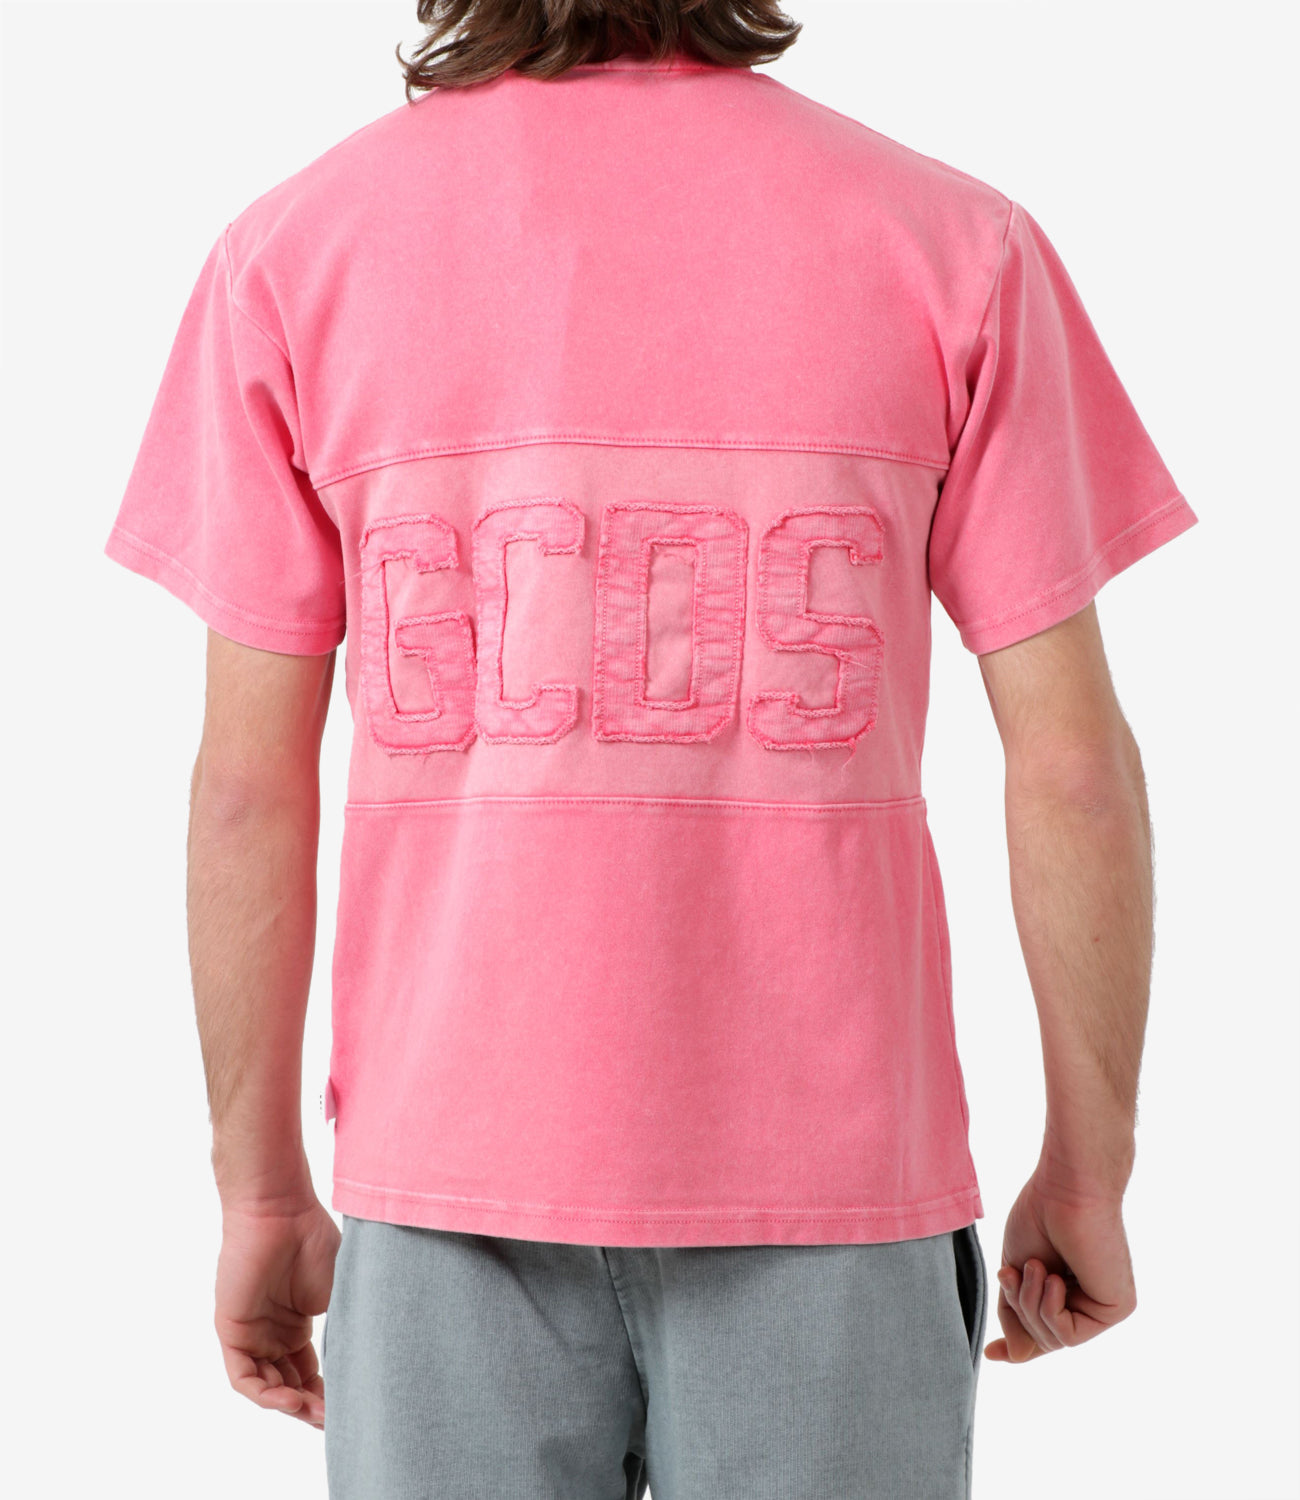 GCDS | T-Shirt Coral